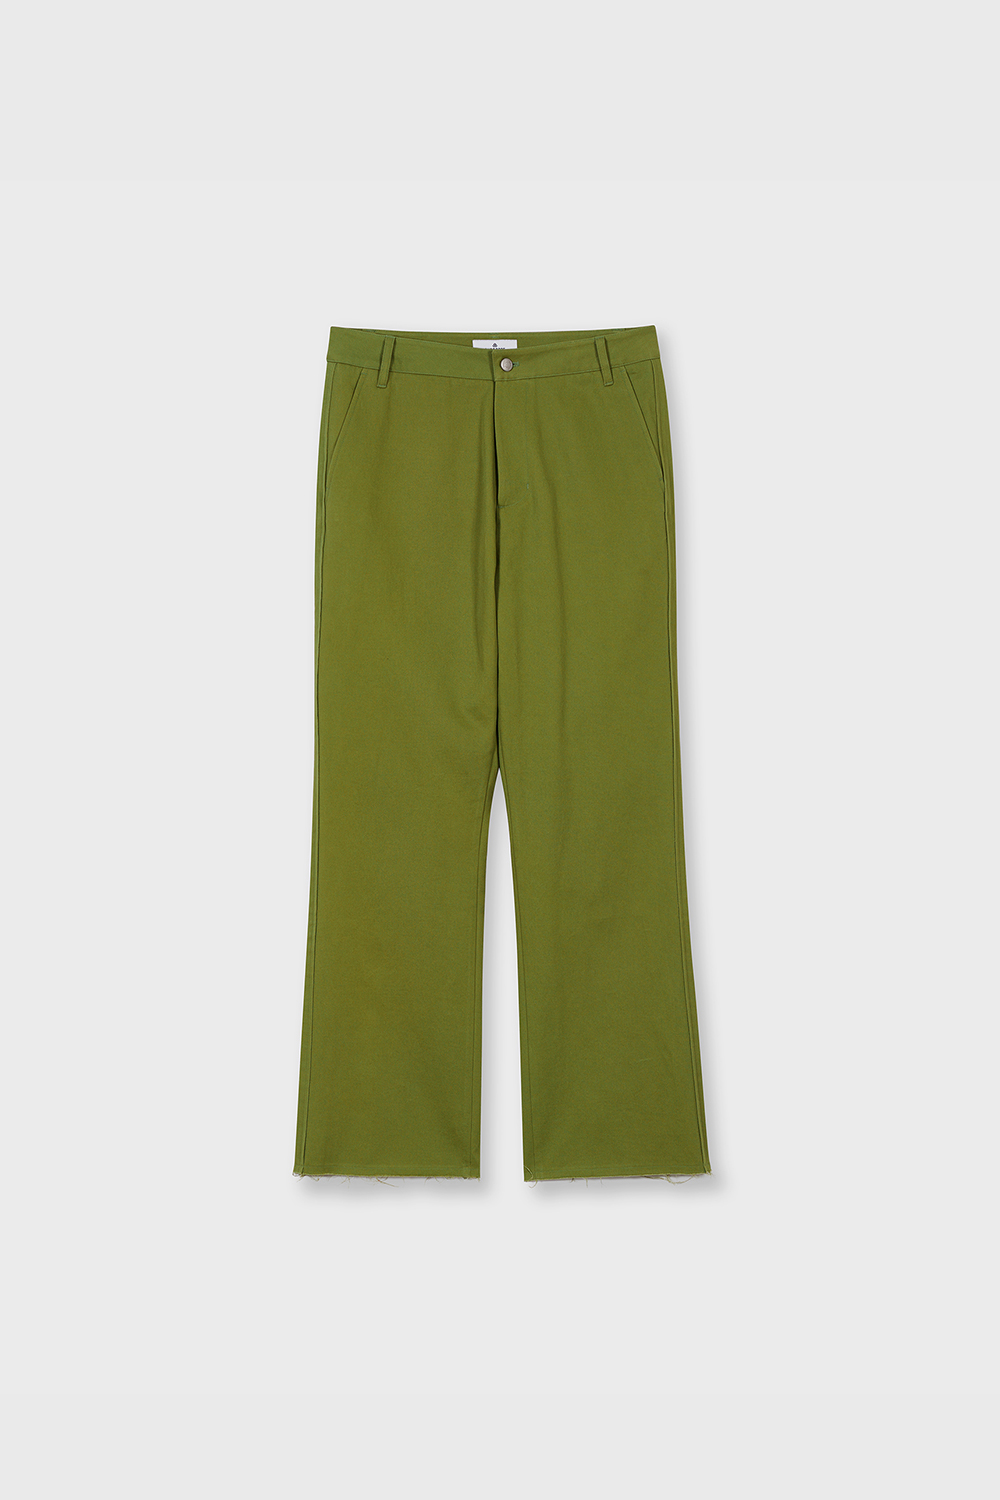 [3/30 배송] Cut Off Bootcut Pants (Lime Green)